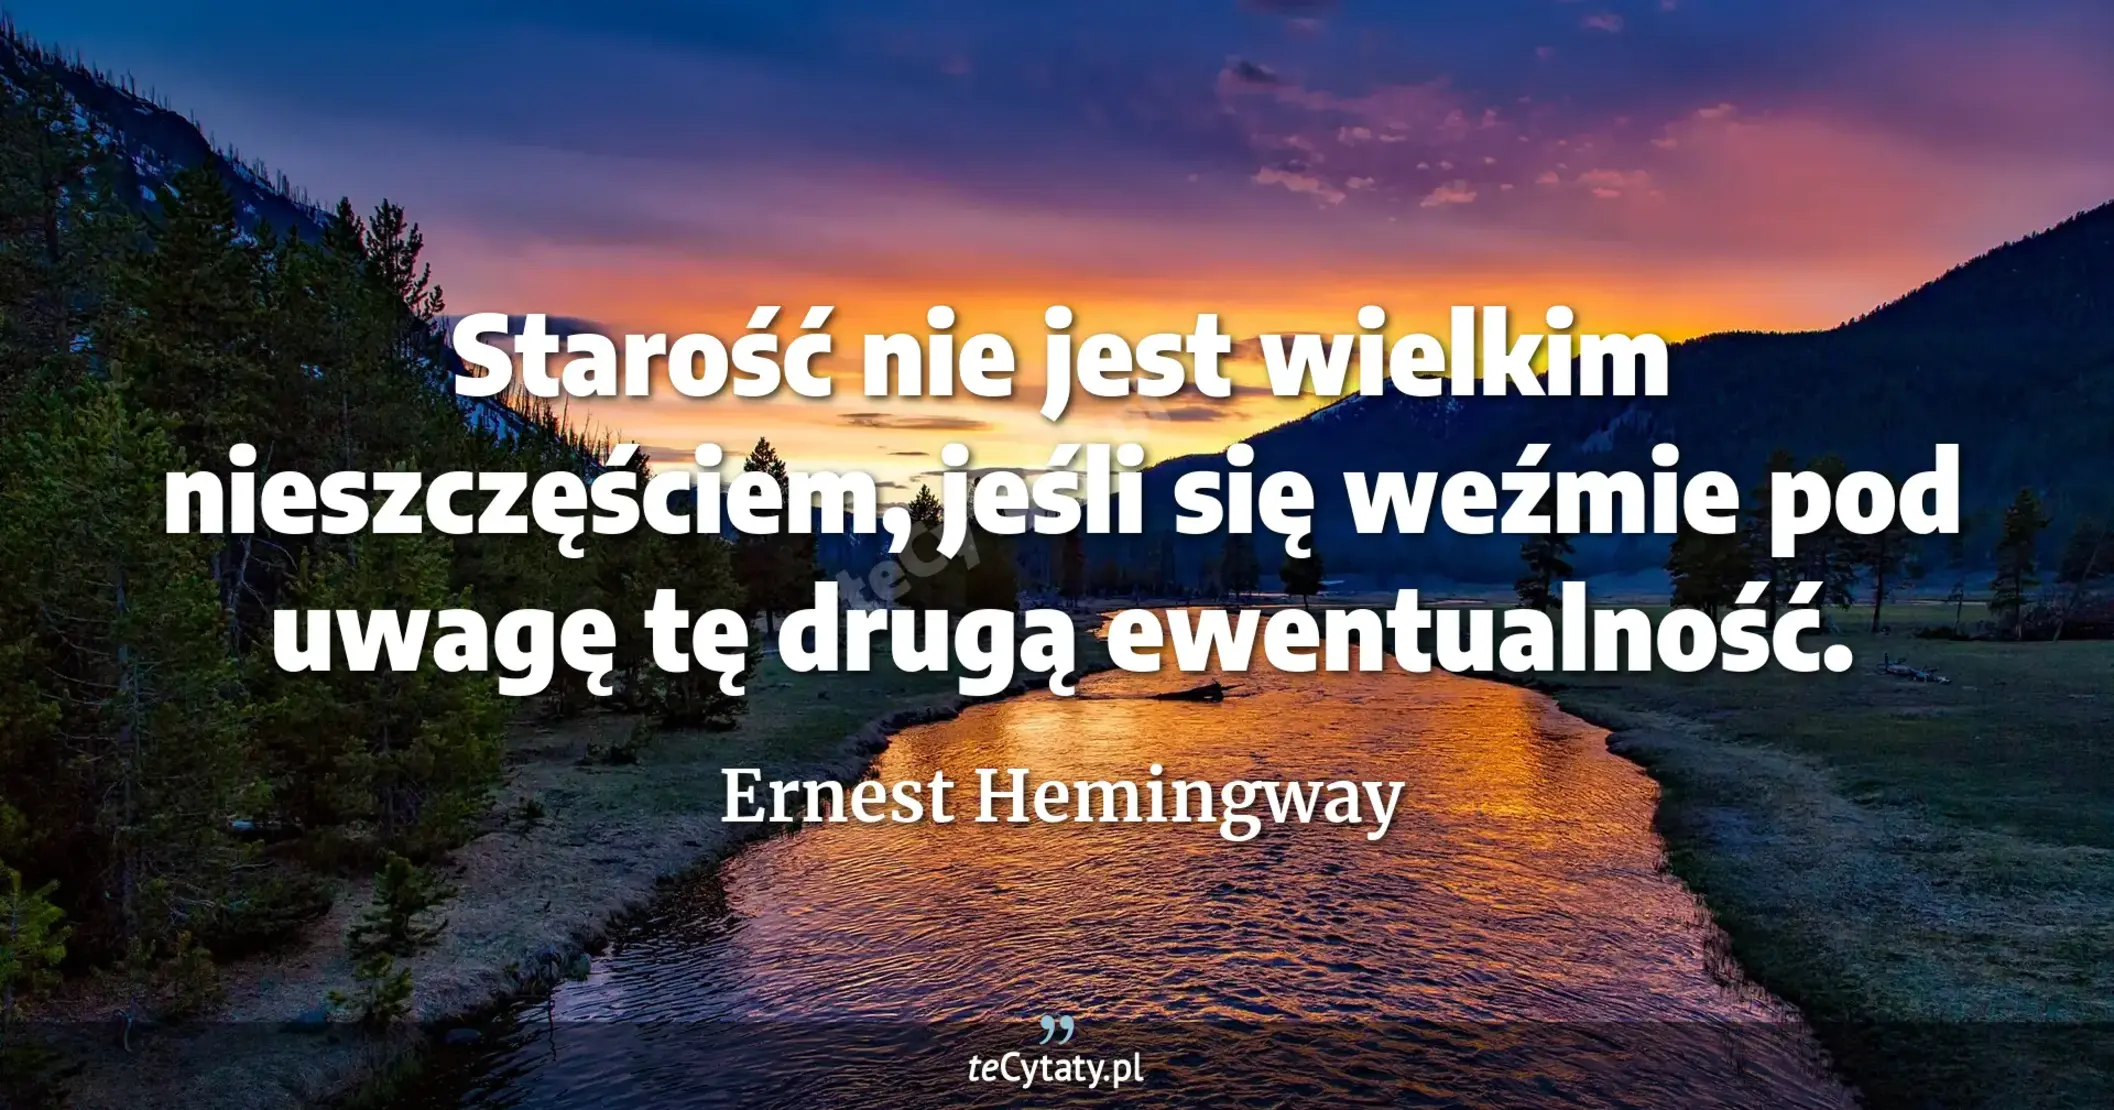 Starość nie jest wielkim nieszczęściem, jeśli się weźmie pod uwagę tę drugą ewentualność. - Ernest Hemingway